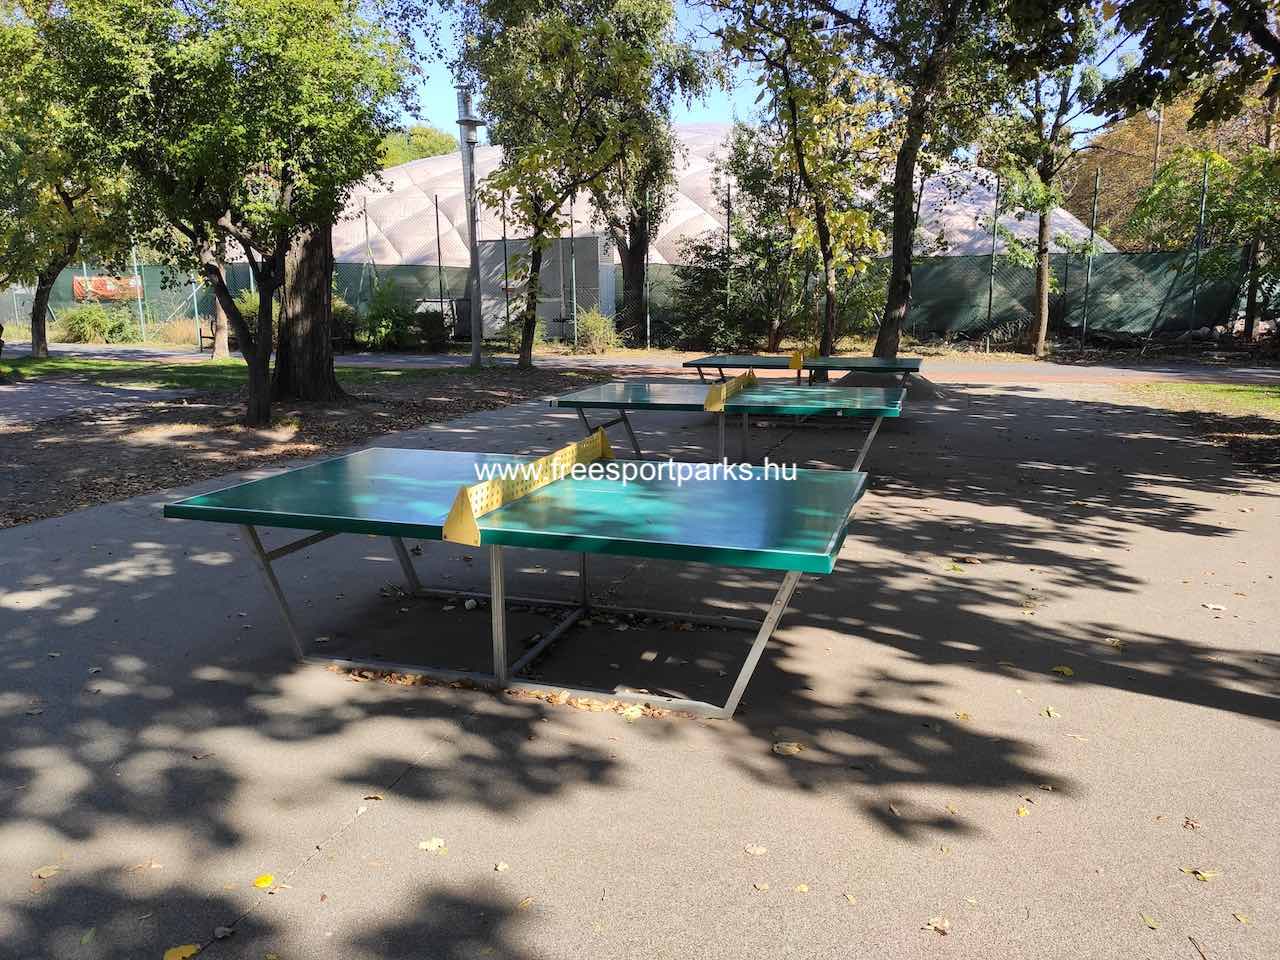 ping-pong pálya, Bikás park - Free Sport Parks térkép